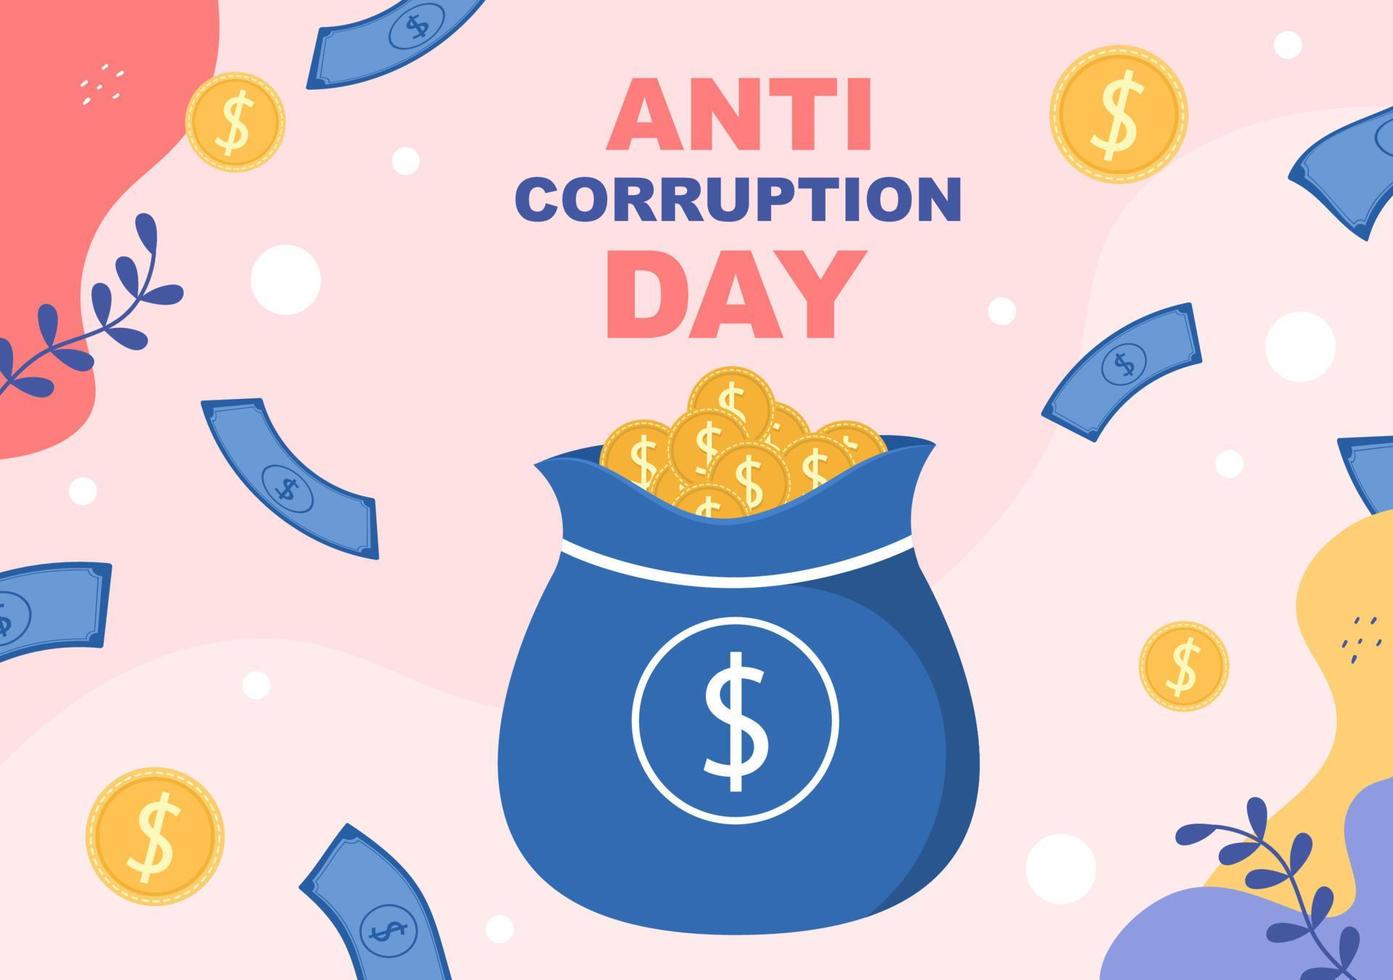 anti-korruptionsdagen som firas varje 9 december för att säga åt allmänheten att sluta ge pengar med en förbudsskylt i platt designillustration vektor